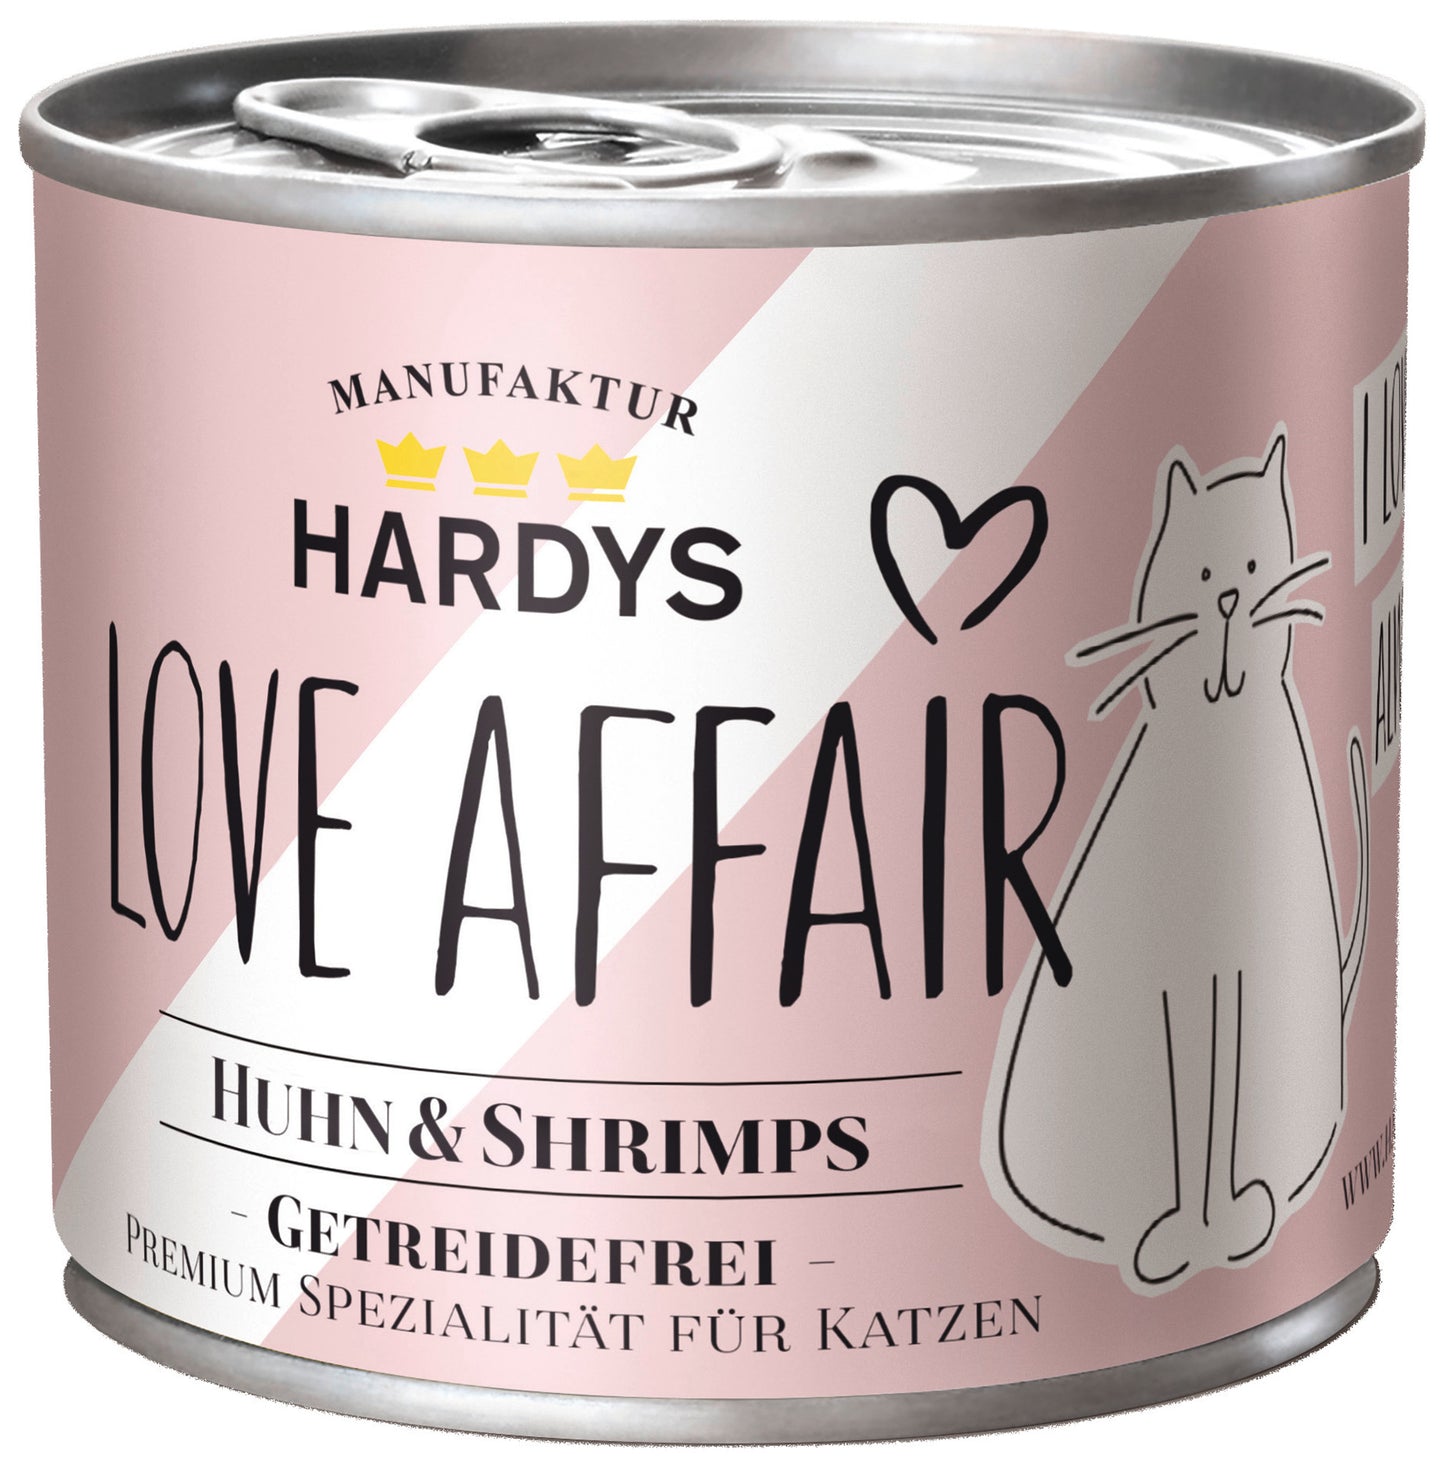 Hardys Love Affair Huhn & Shrimps 200g